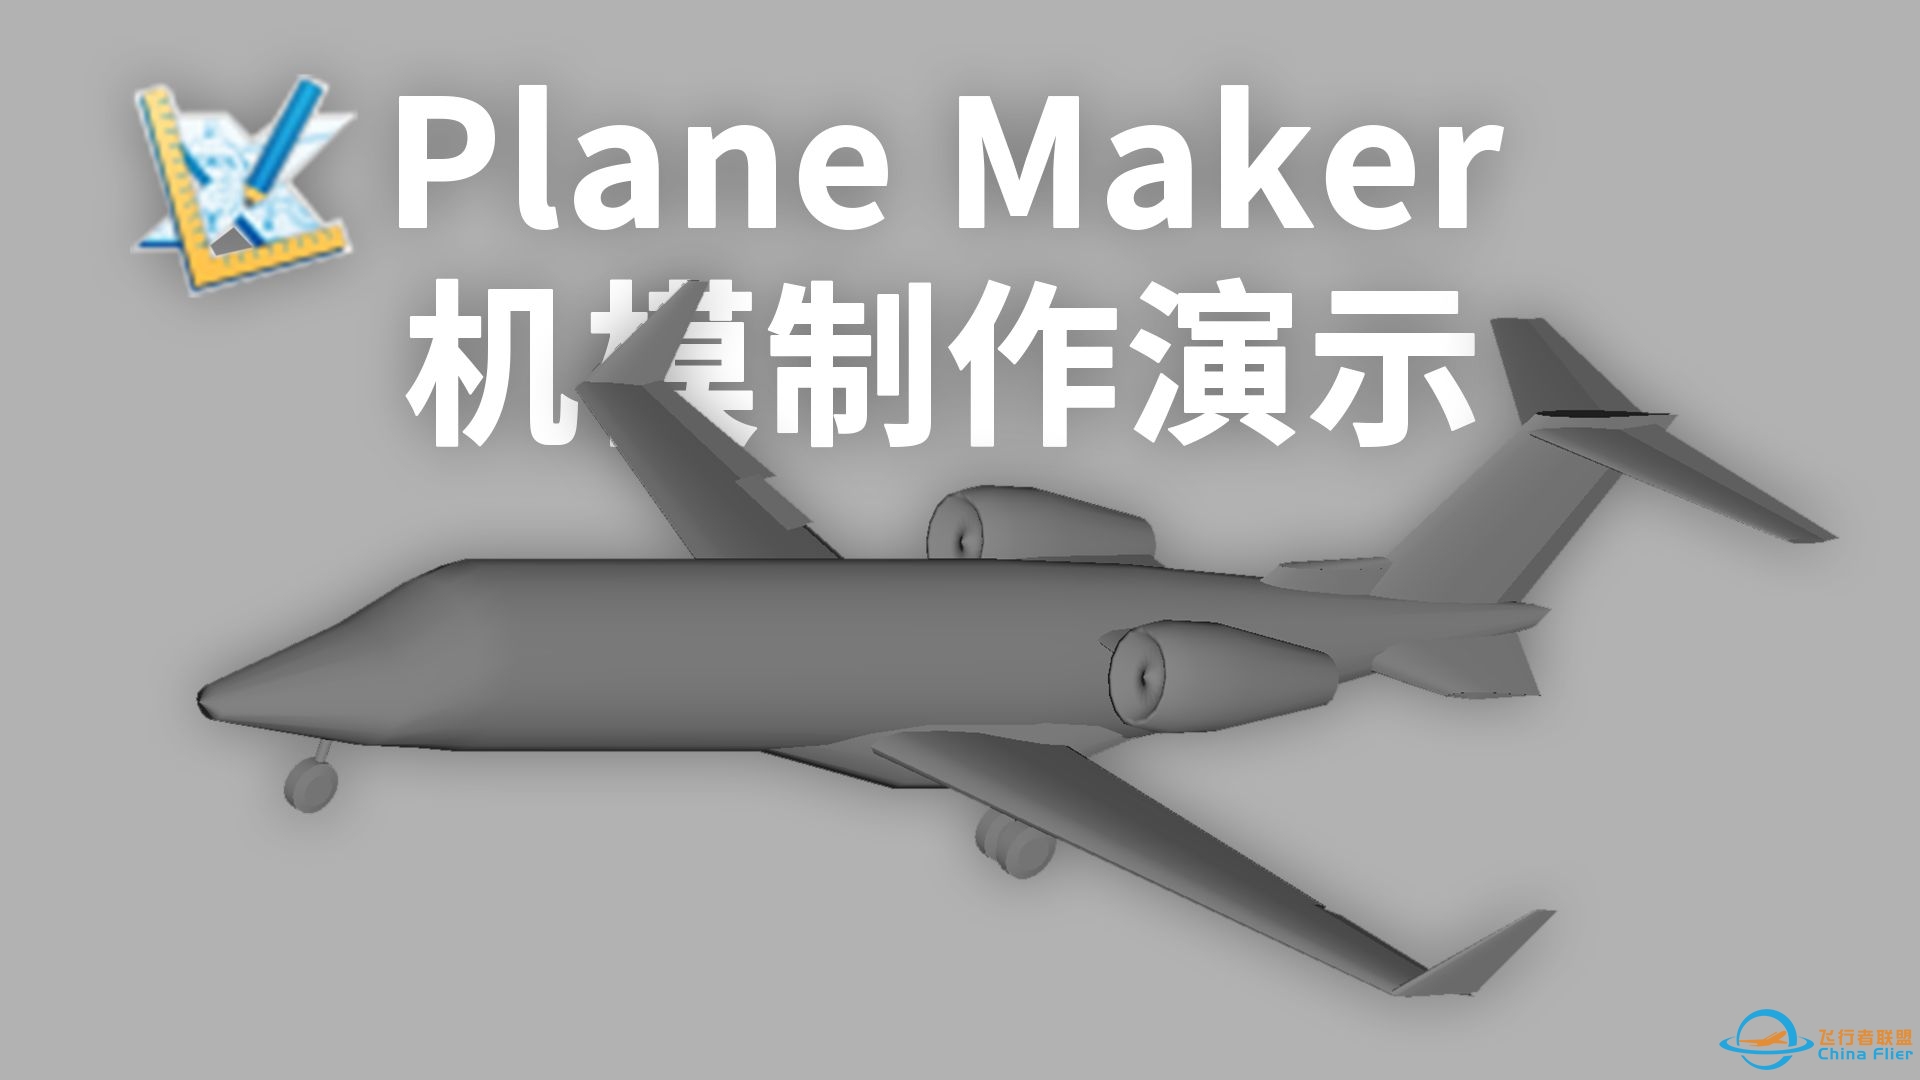 【教程】演示如何使用Plane Maker为X-Plane制作最基本的机模-9465 